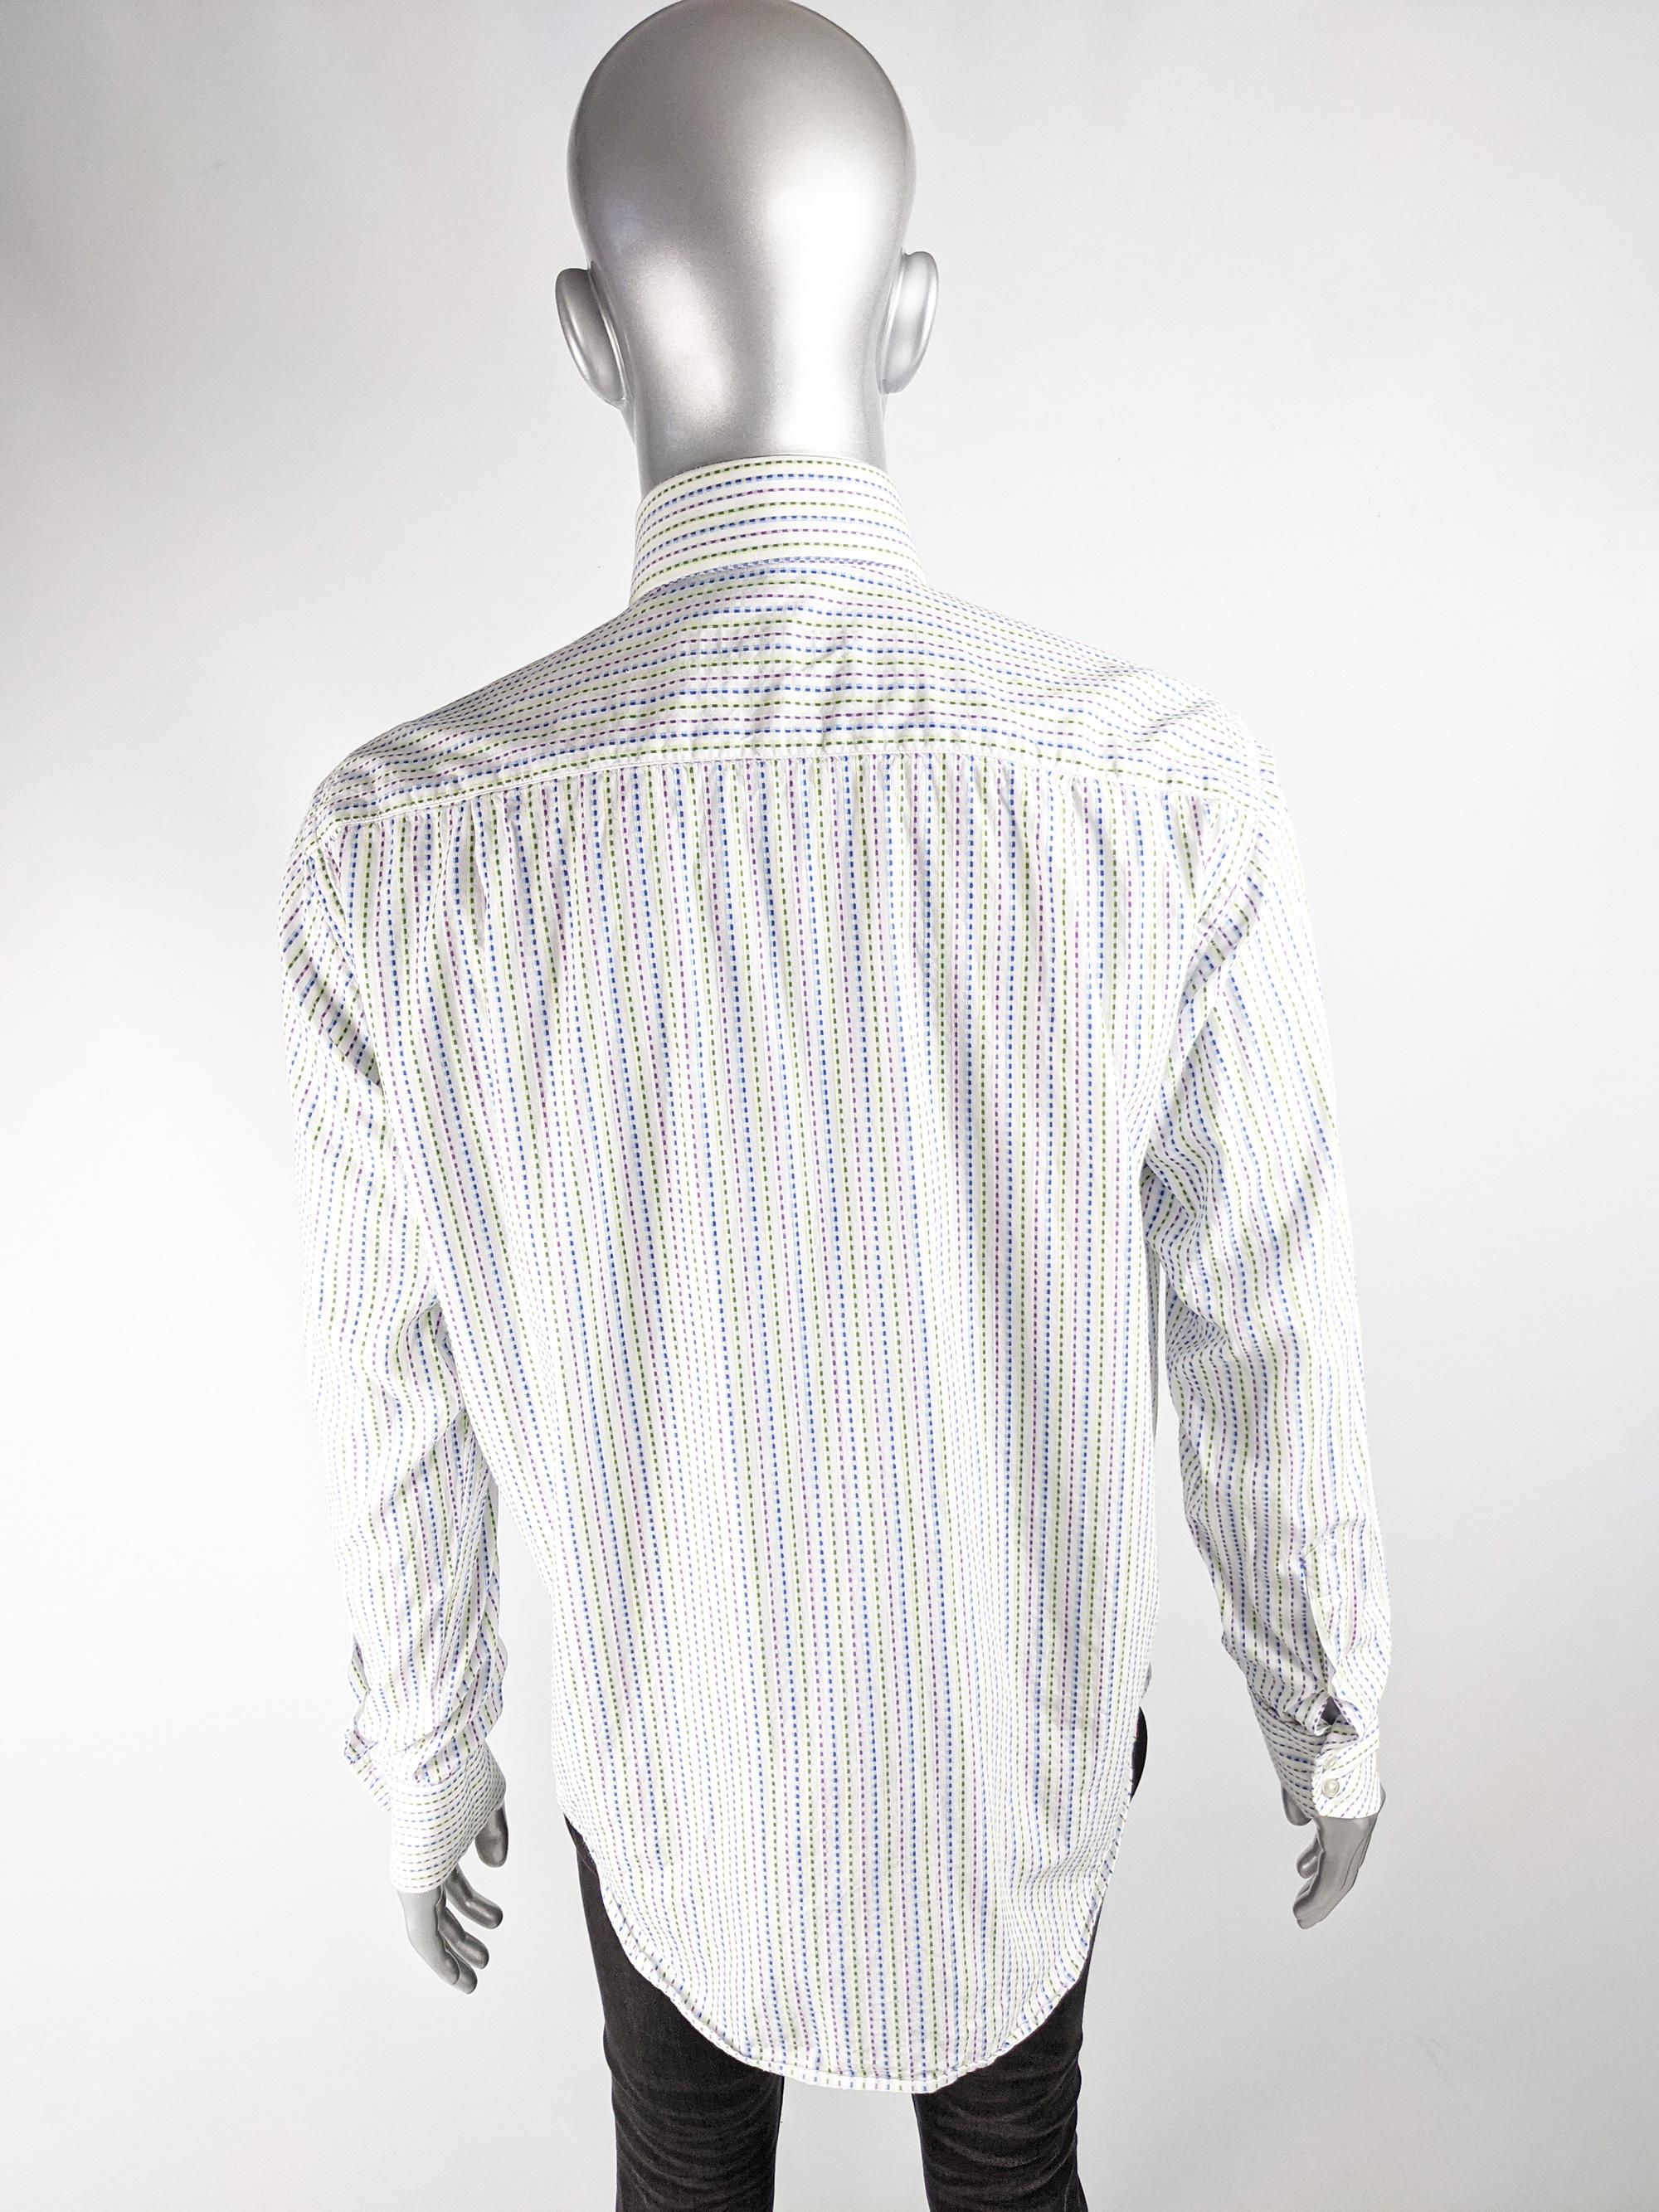 Gray Katherine Hamnett Mens Vintage Dress Shirt For Sale